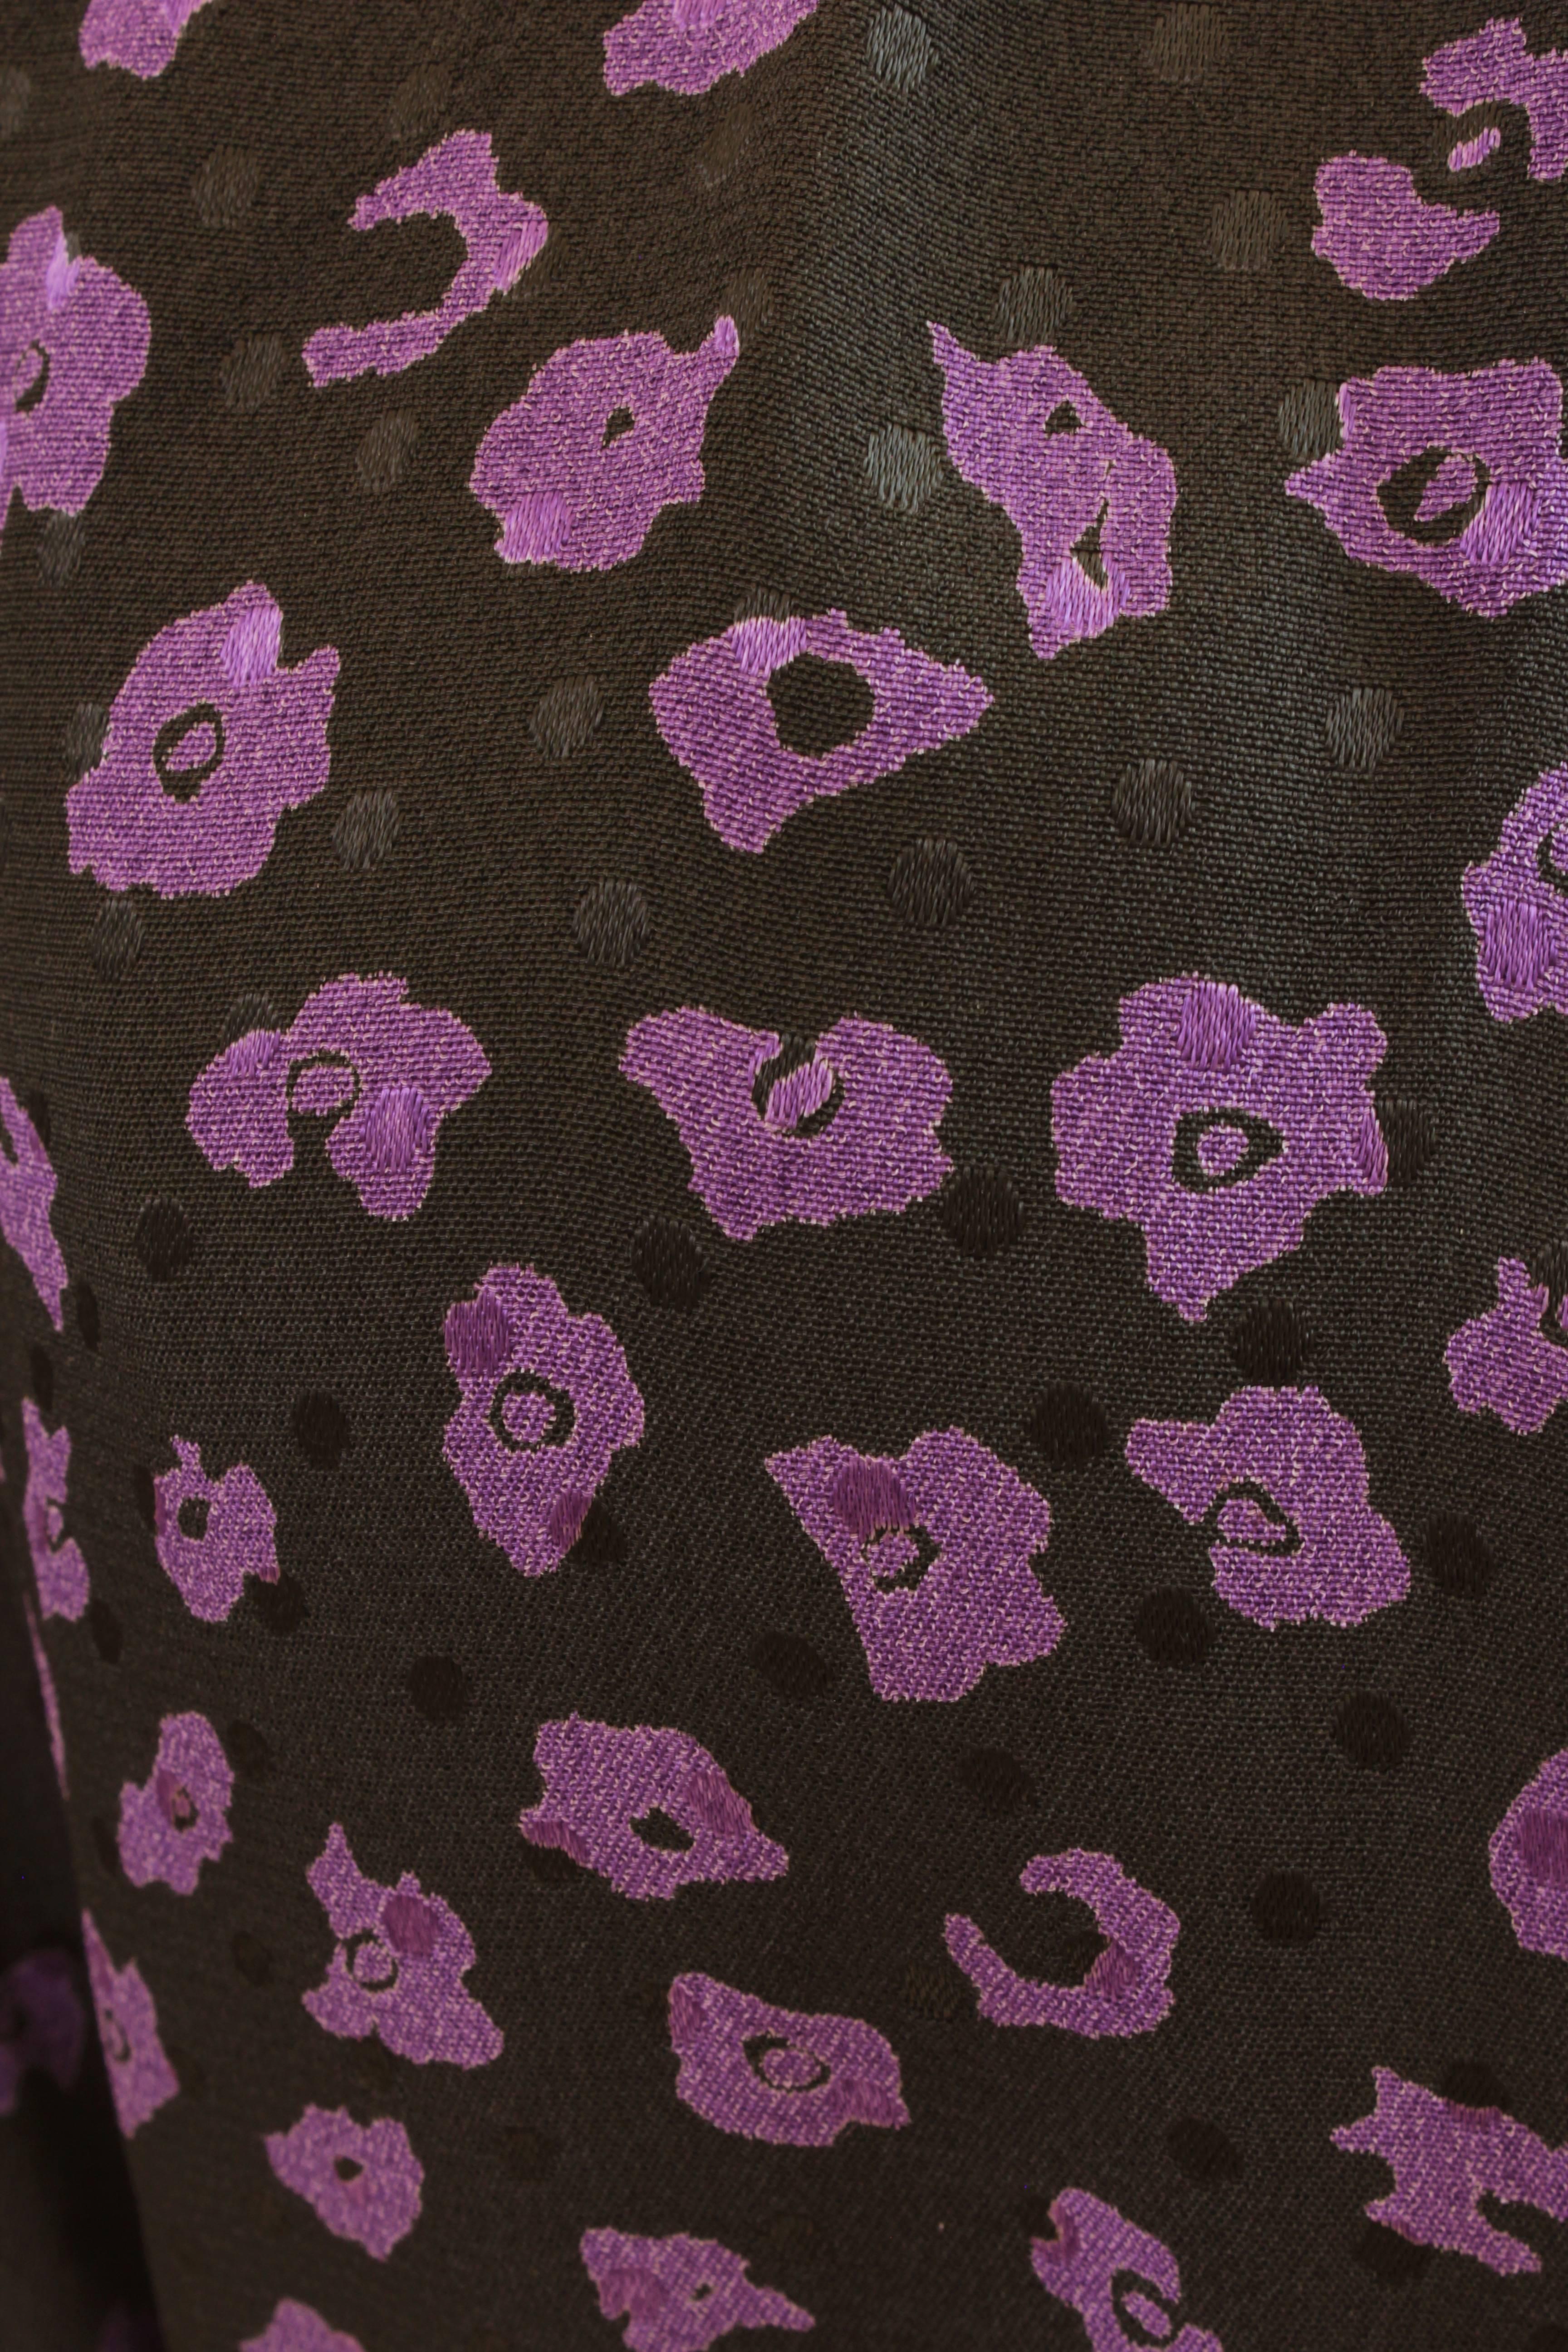 Vintage Ungaro Belted Dress Silk Jacquard Purple Floral on Black Size 10 3